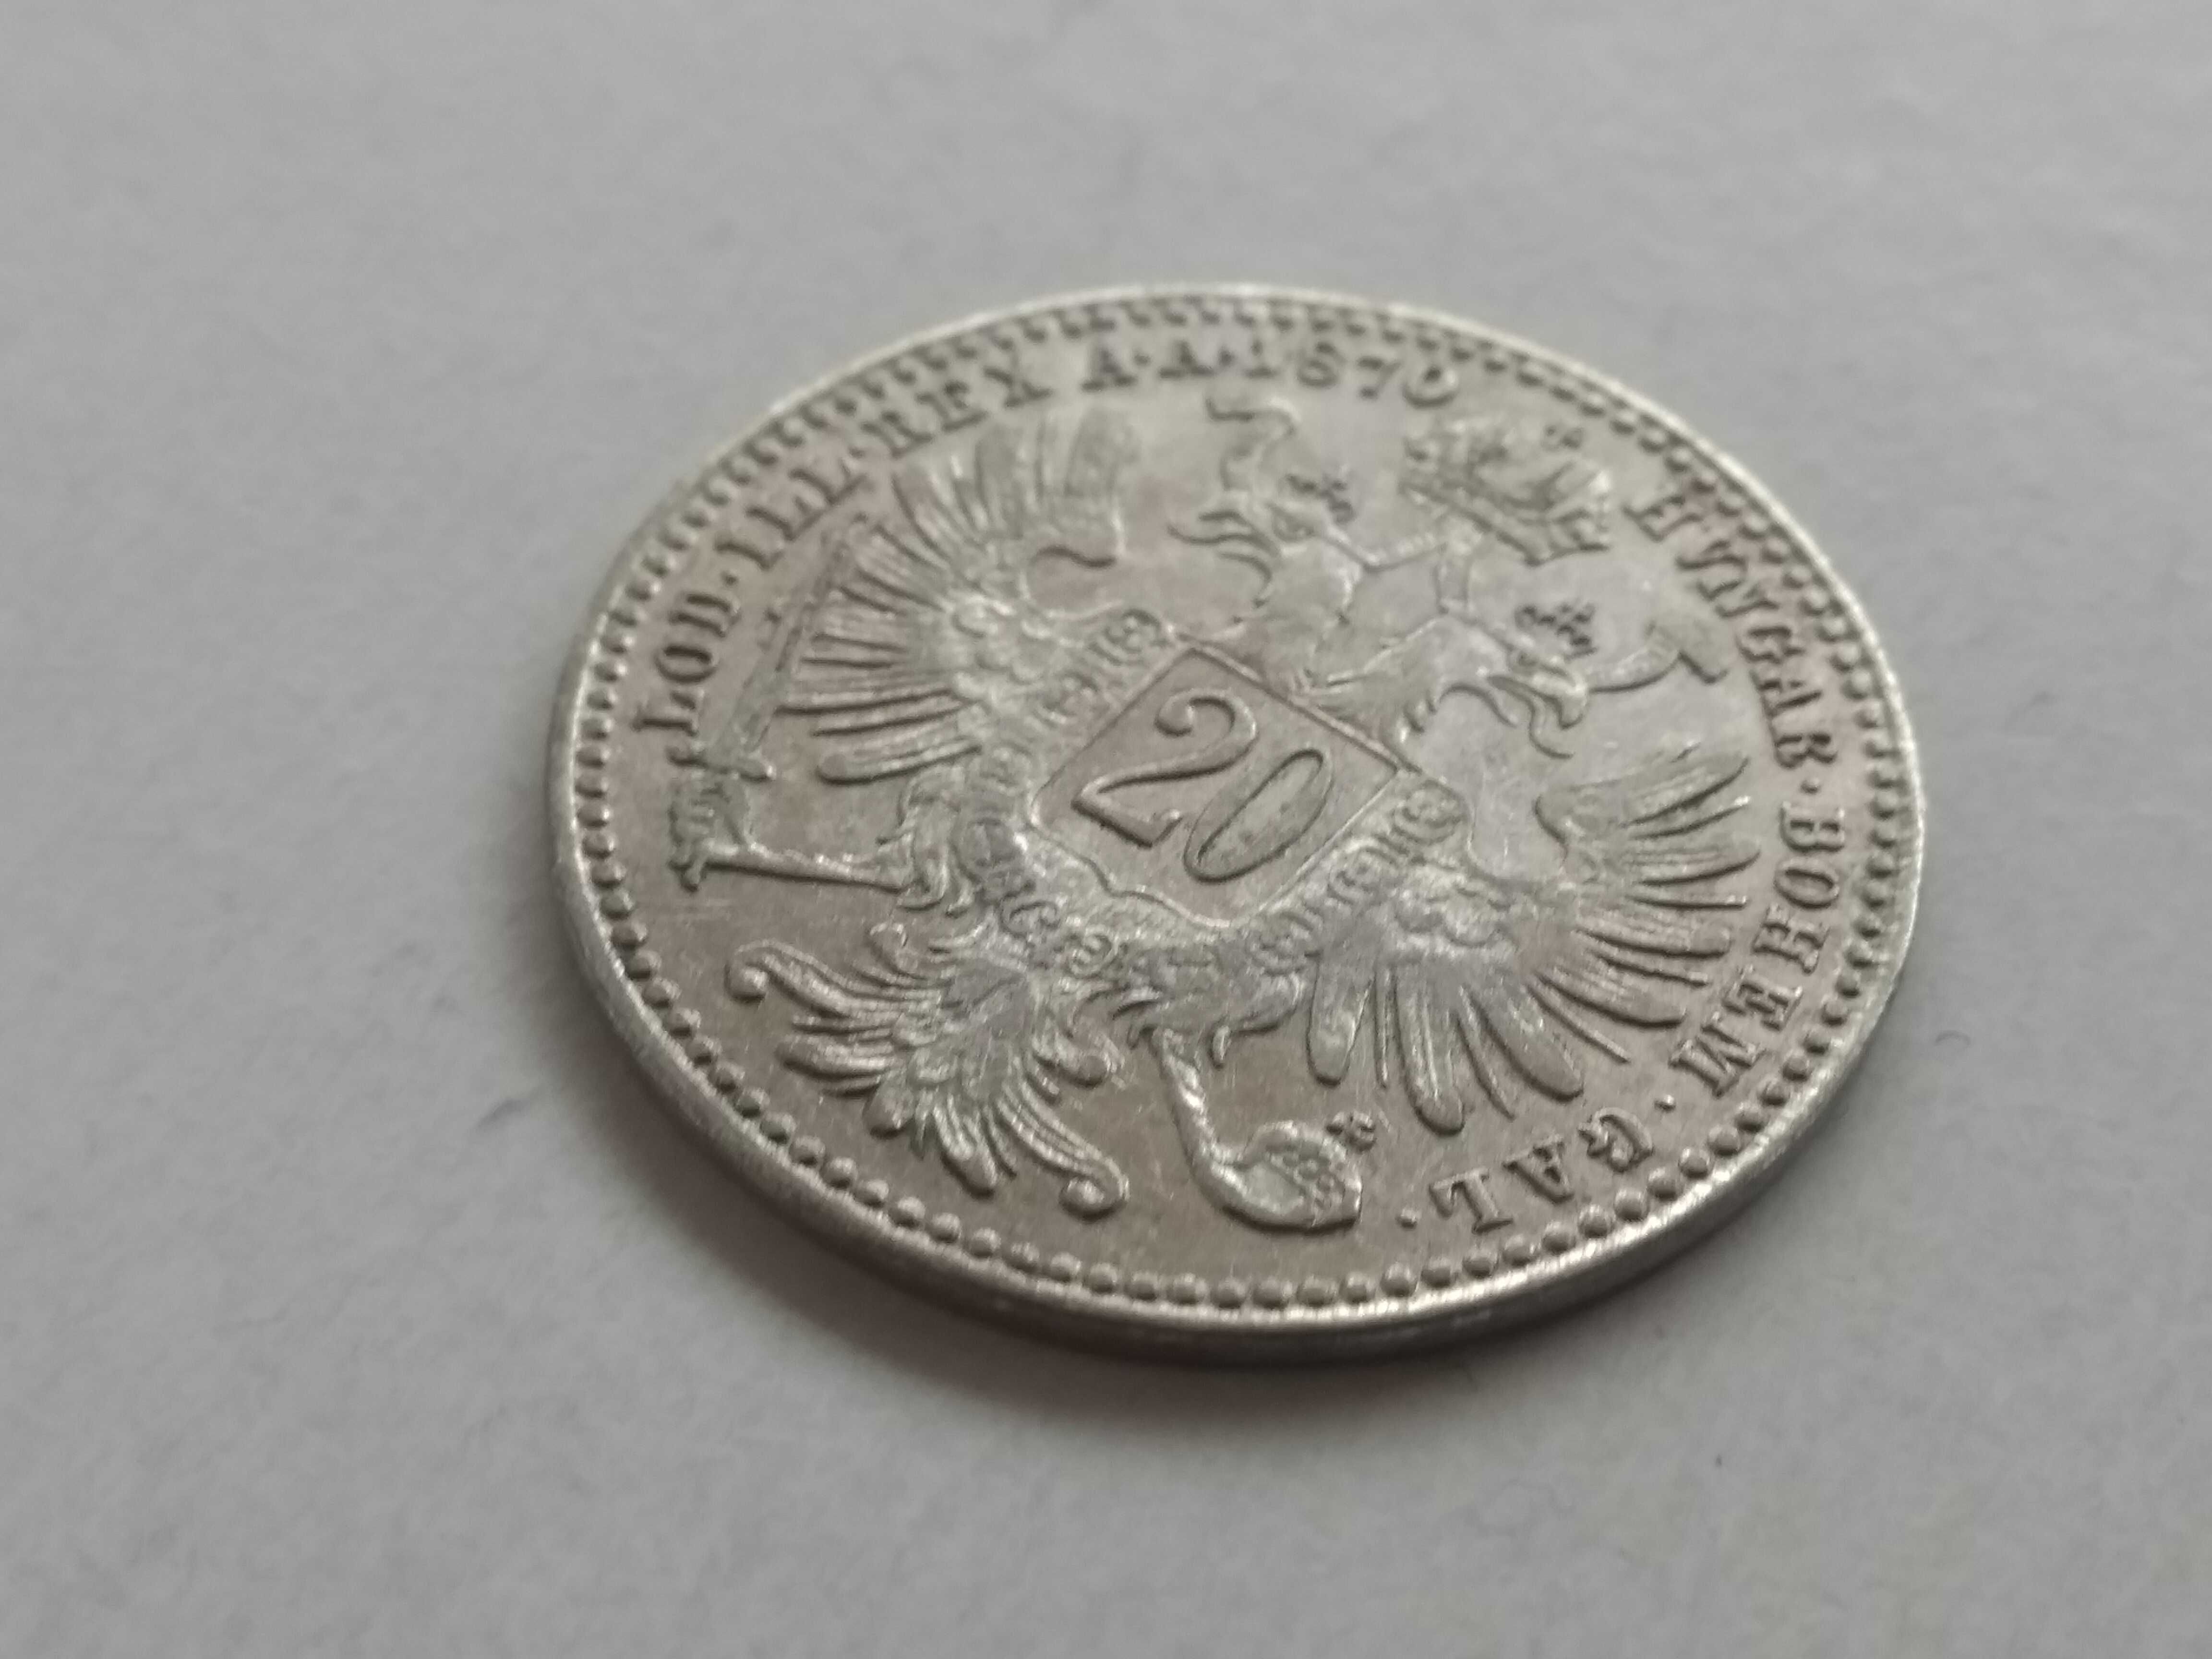 Austro-Węgry, 20 krajcarów 1870. Piękna moneta. stan 3+